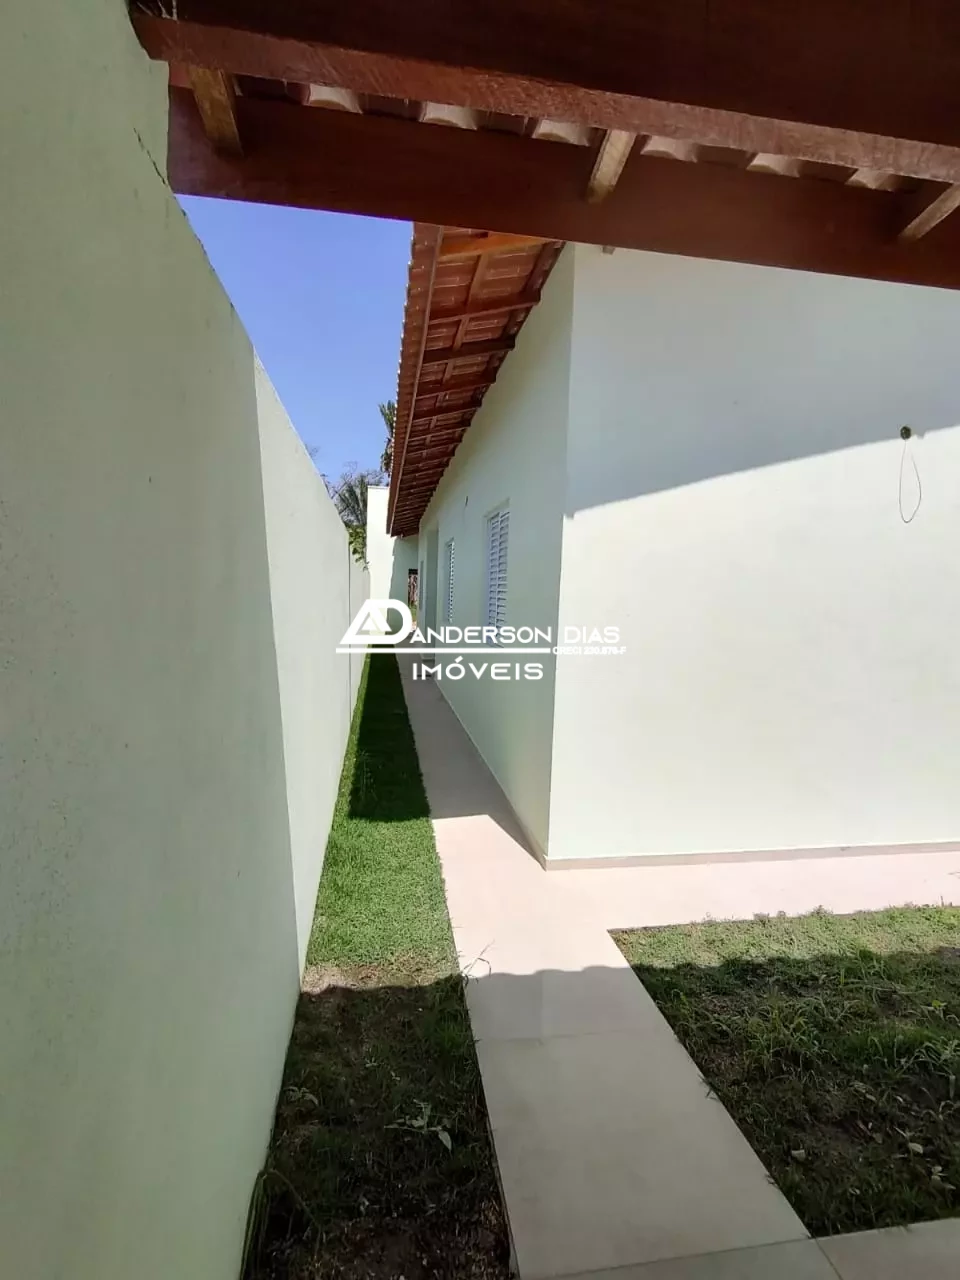 Casa com 3 dormitórios à venda, 90 m² por R$ 335.000 - Morro do Algodão - Caraguatatuba/SP